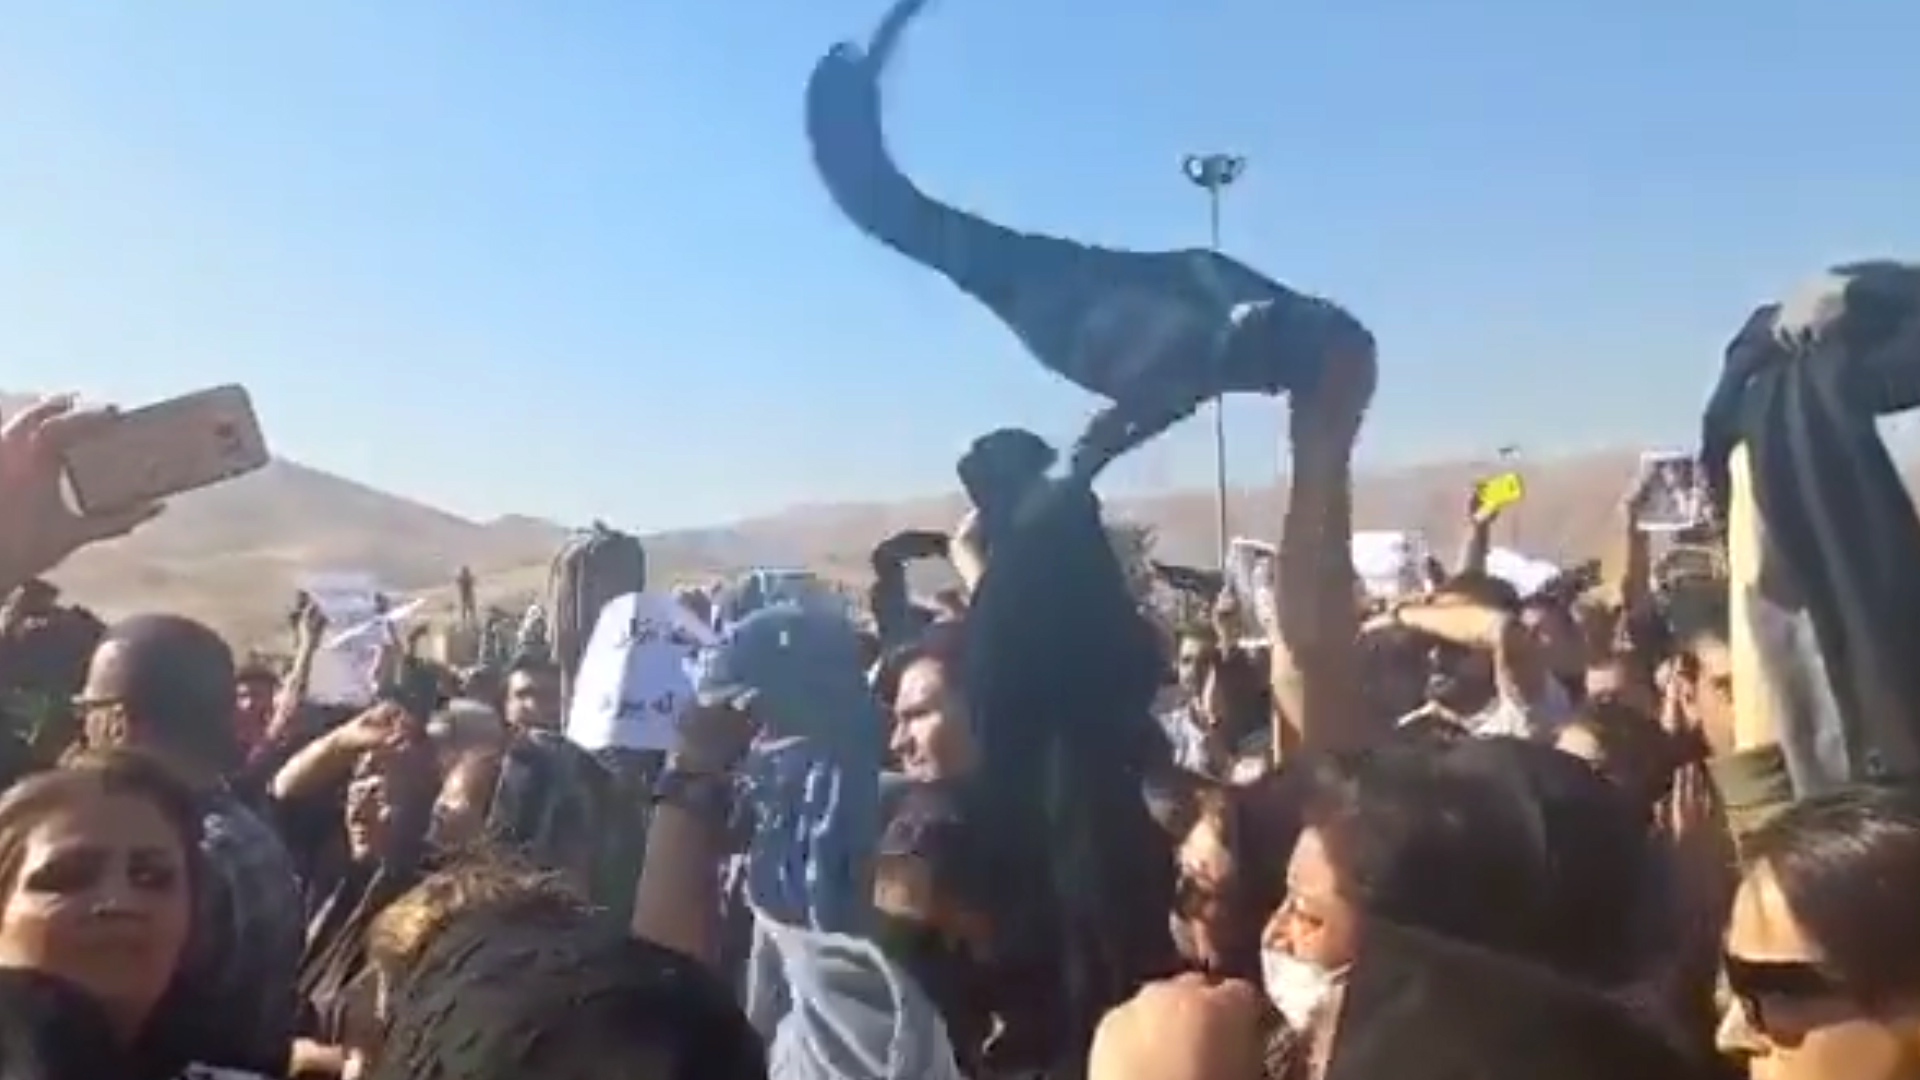 Impactantes protestas contra el régimen de Irán: mujeres se quitaron el velo gritando consignas contra el ayatollah tras la muerte de la joven Mahsa Amini